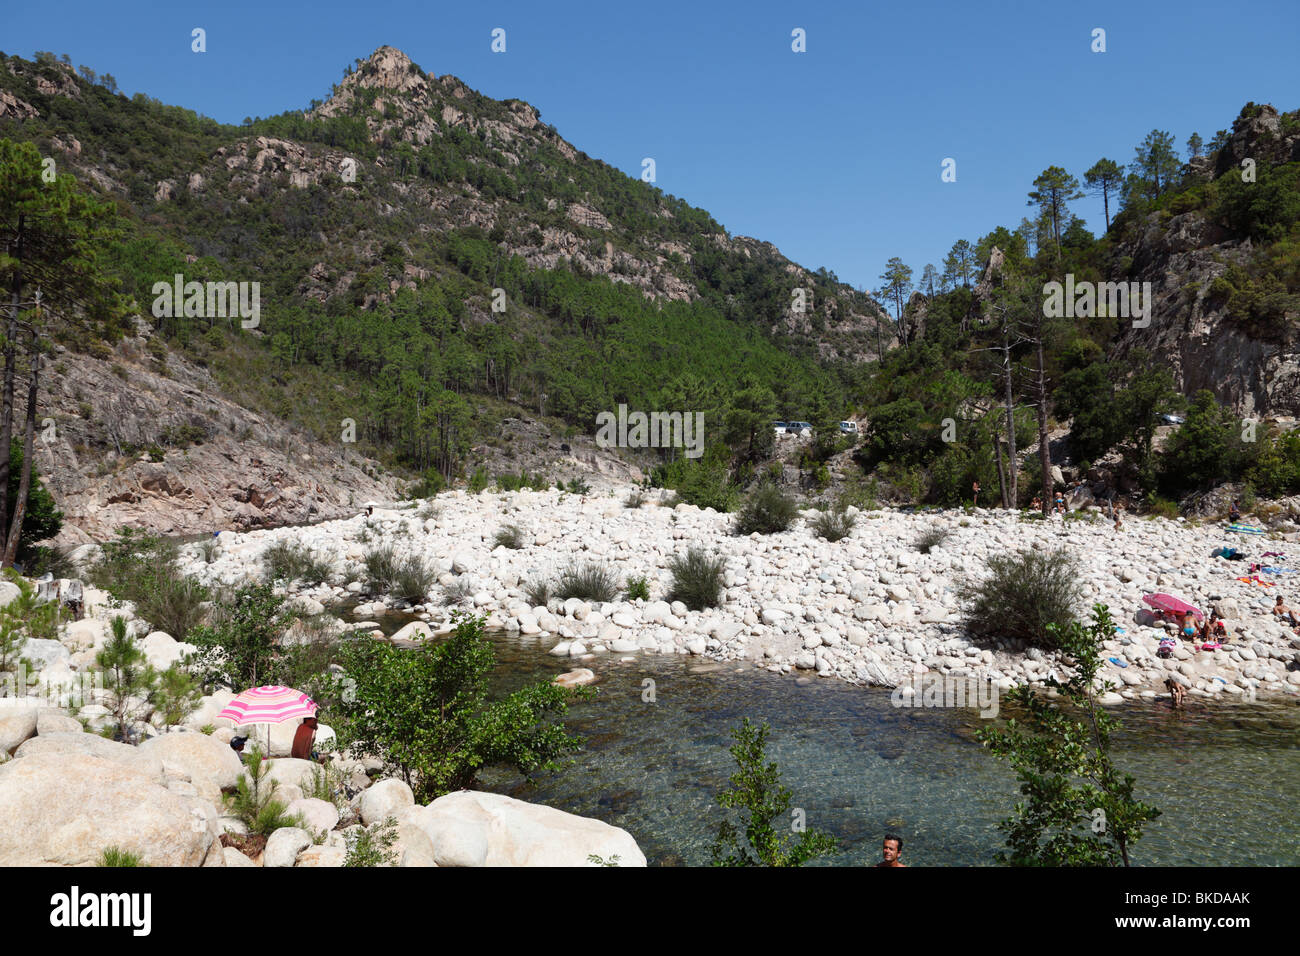 La baignade dans un torrent de montagne en Corse Banque D'Images